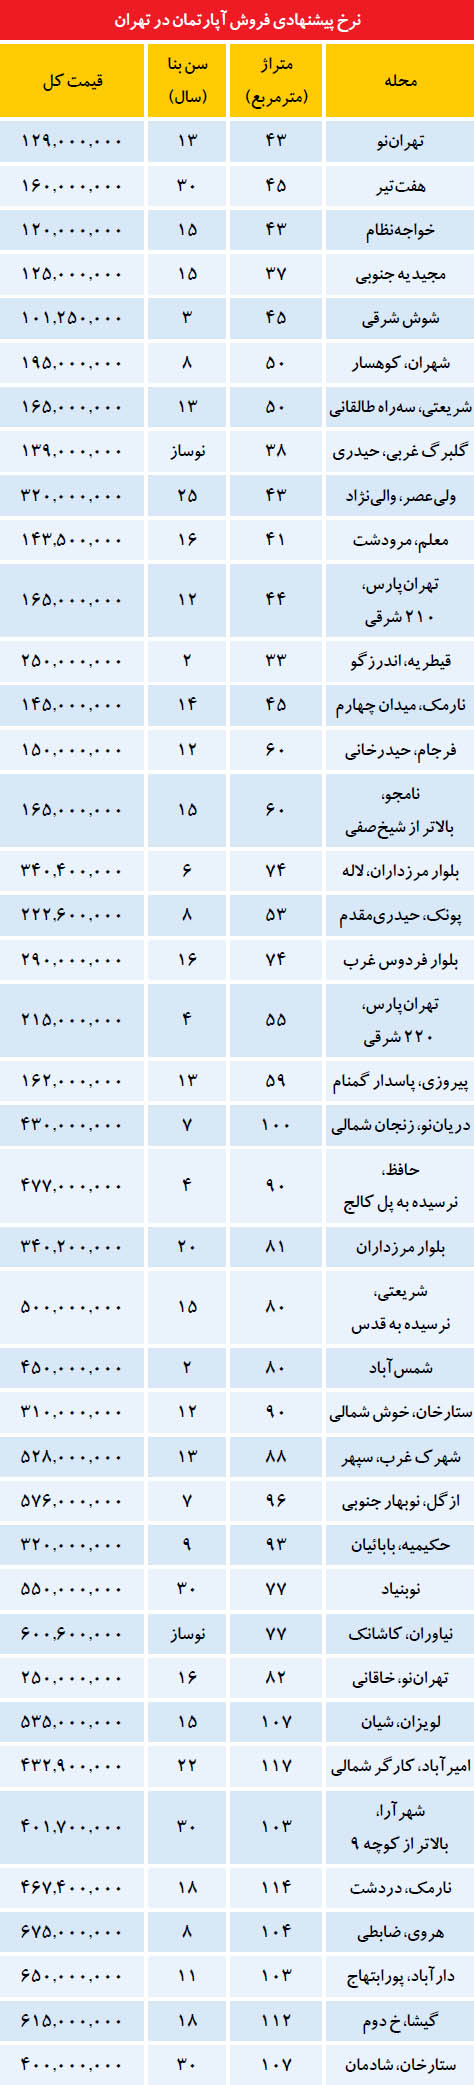 نرخ پیشنهادی فروش آپارتمان در تهران